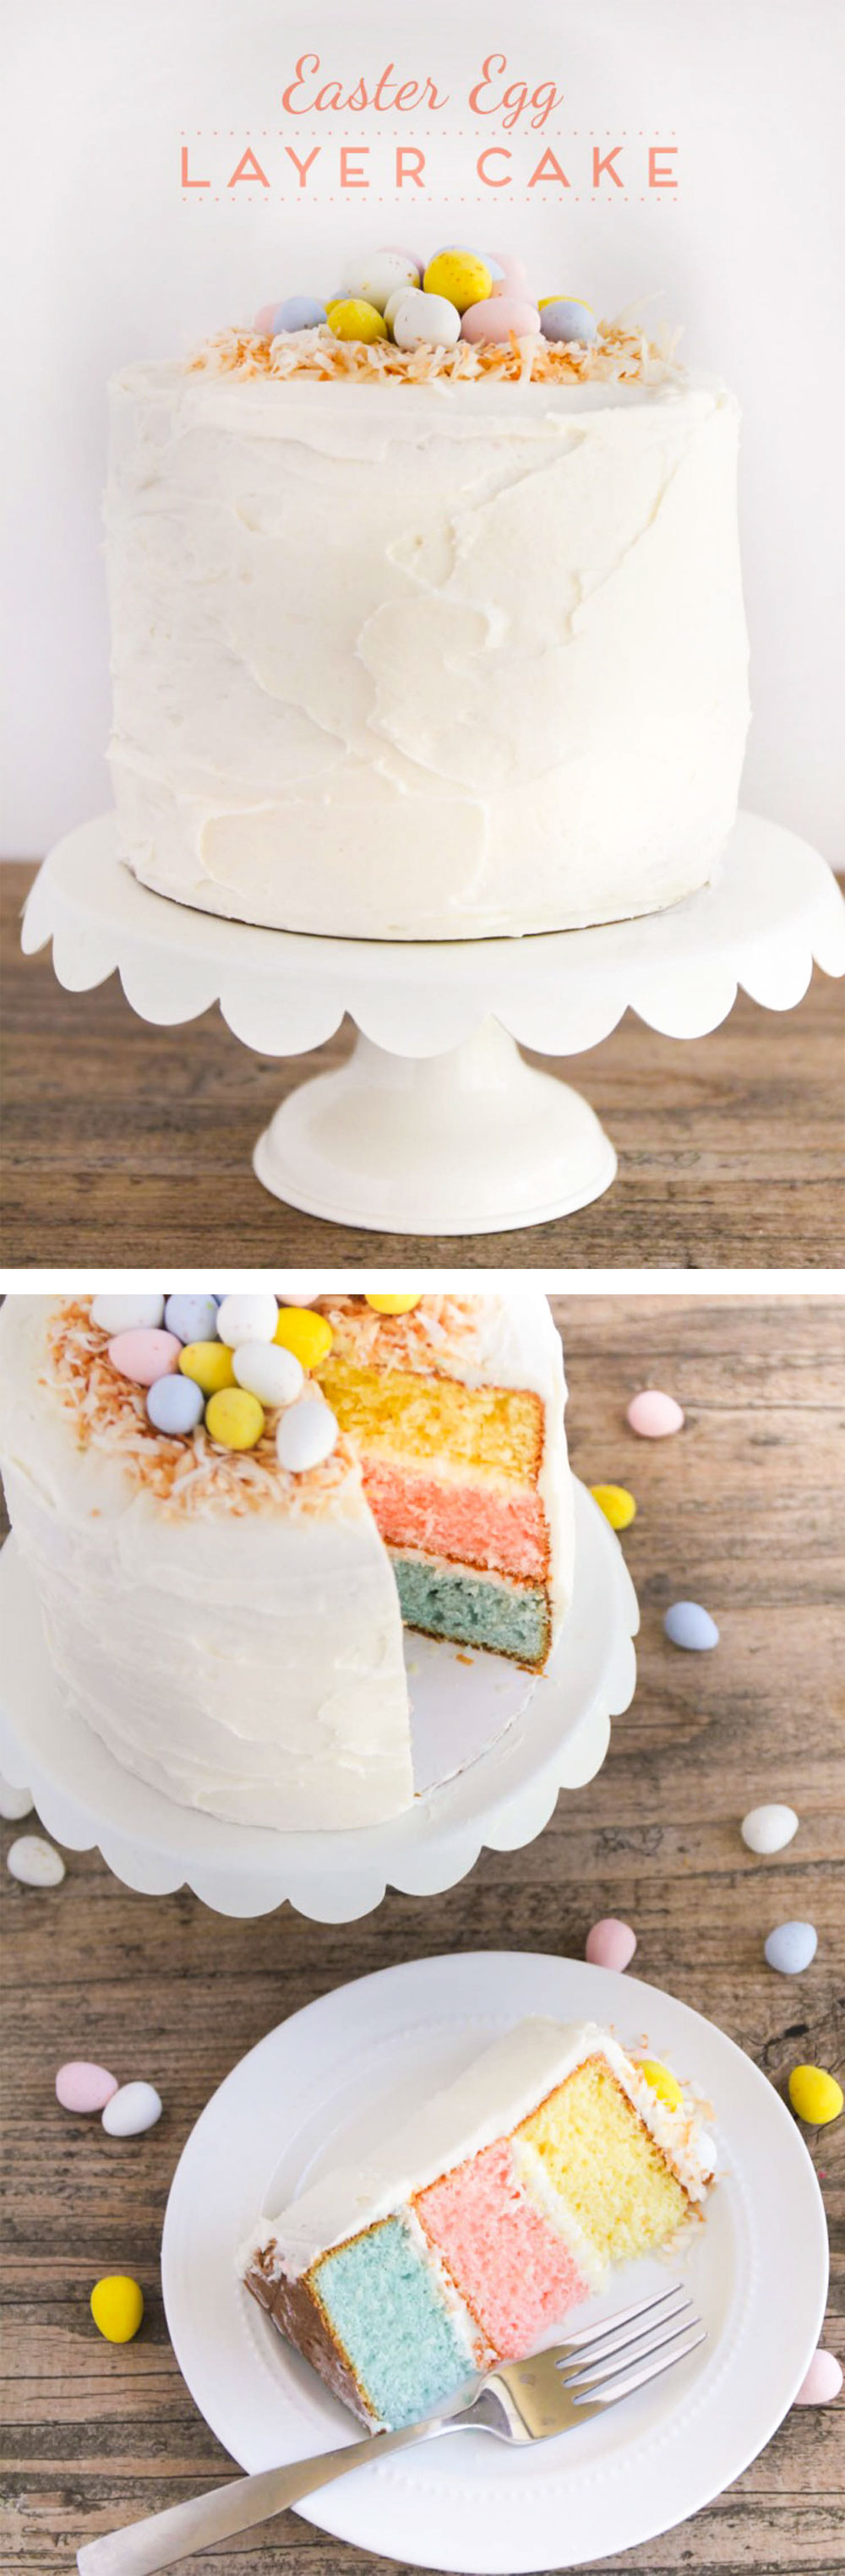 Easter-egg-layer-cake